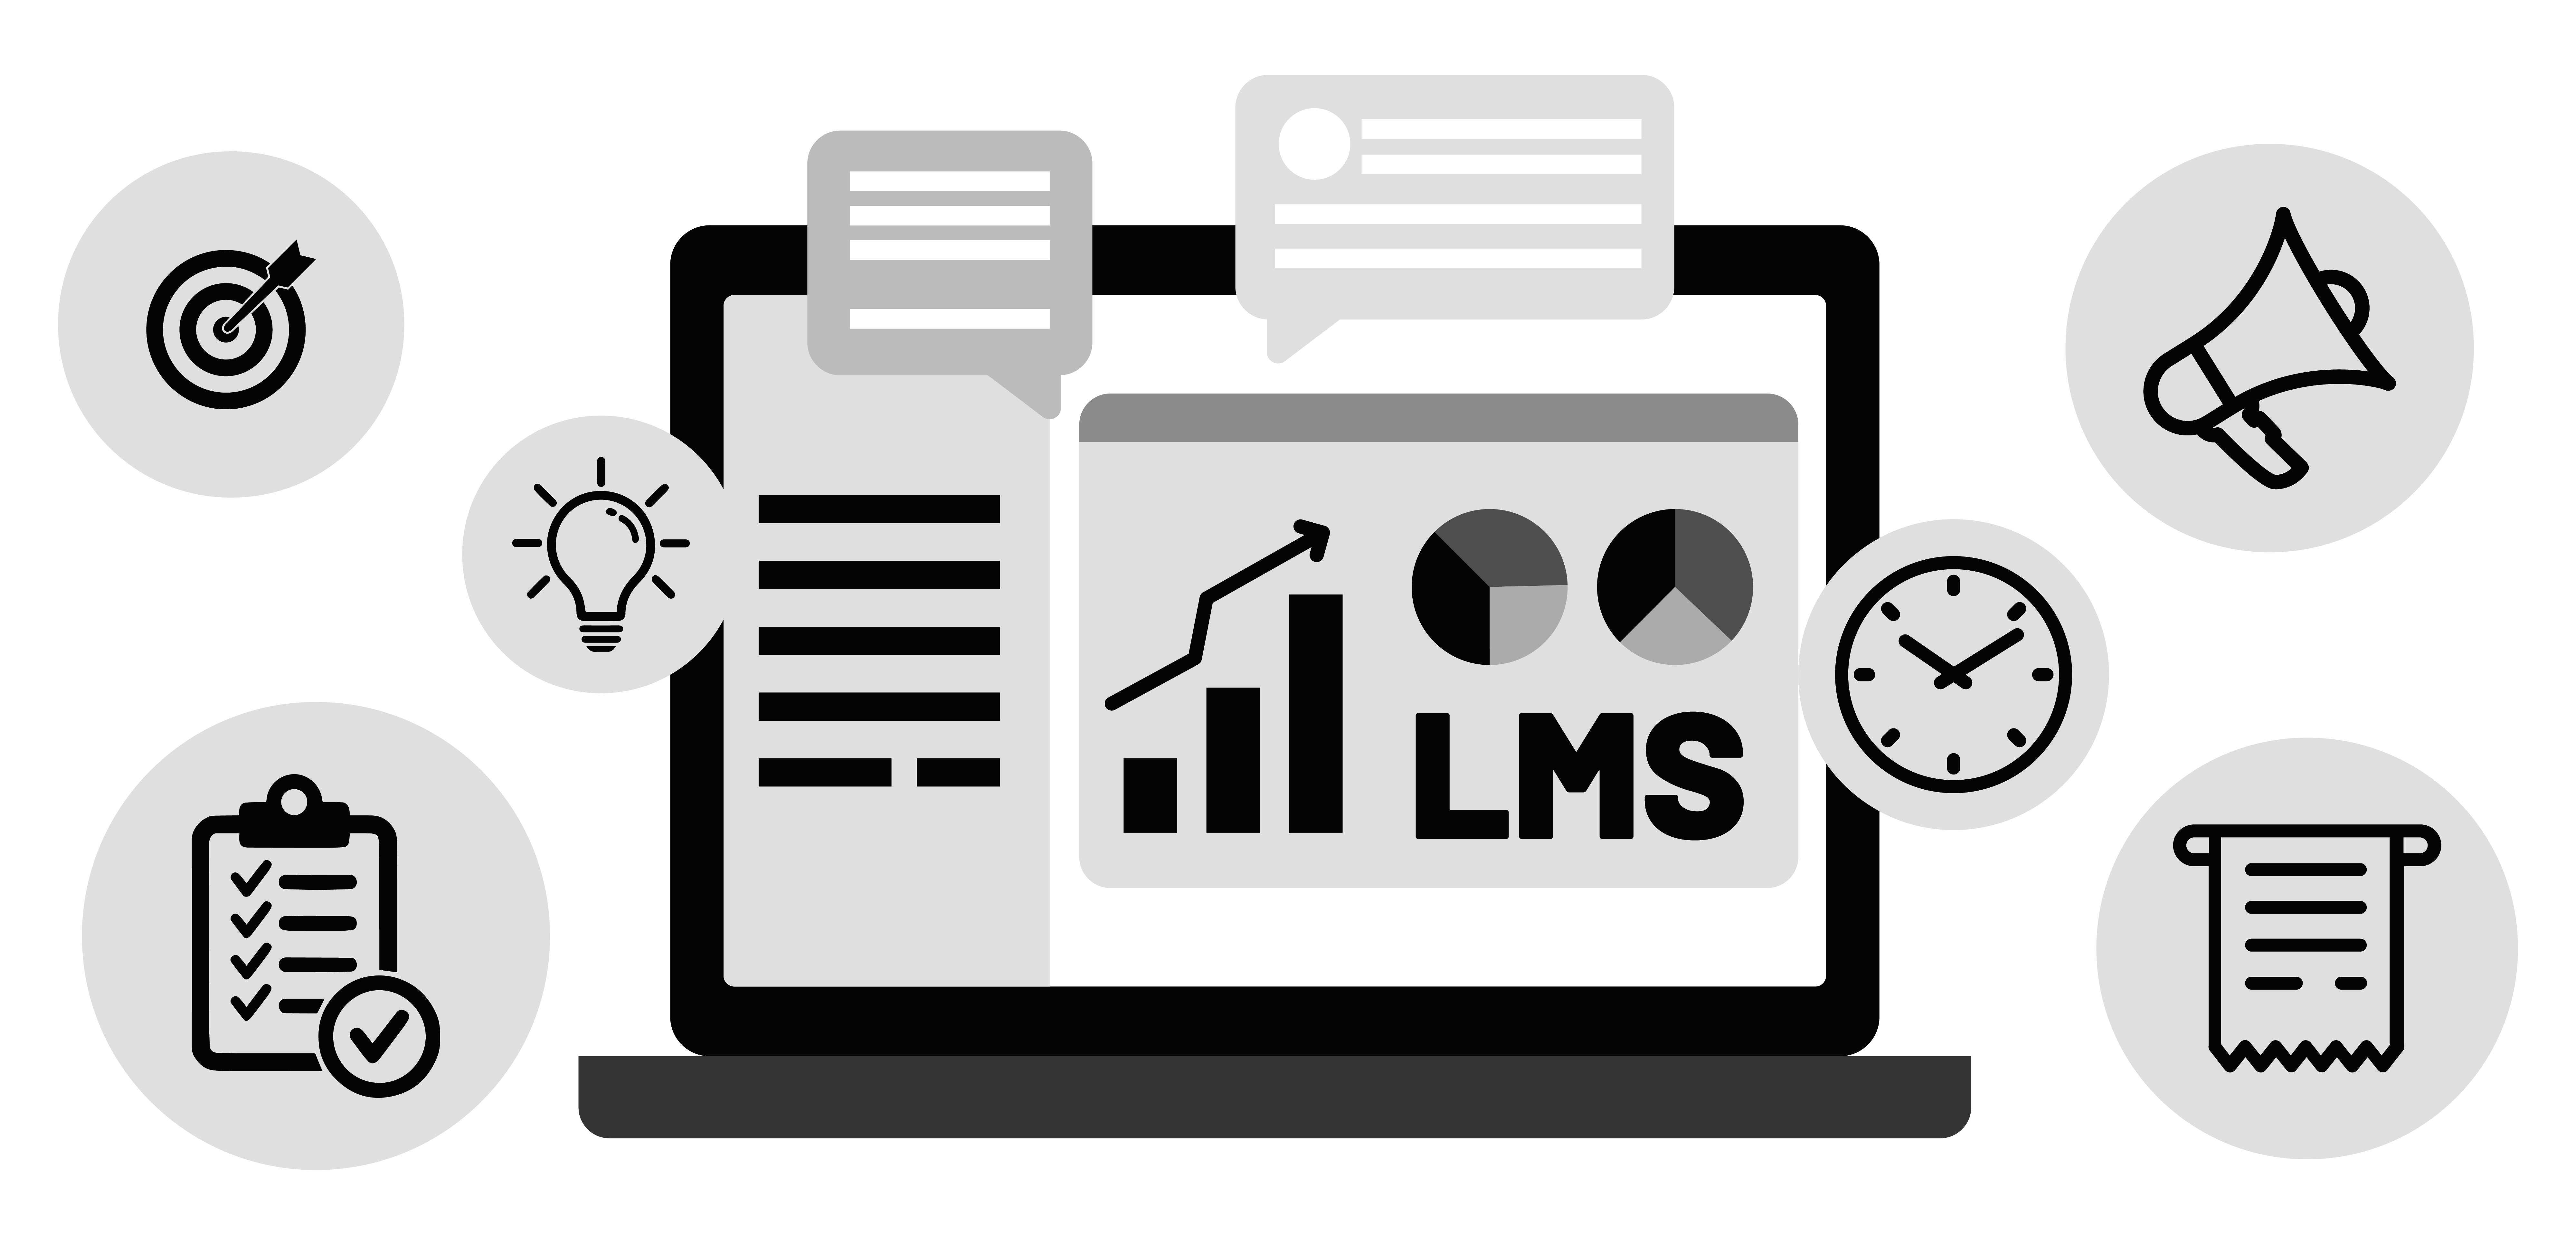 Ein LMS ermöglicht Fristen- und Zielsetzung, Ideenfindung und Aufgabenverteilung